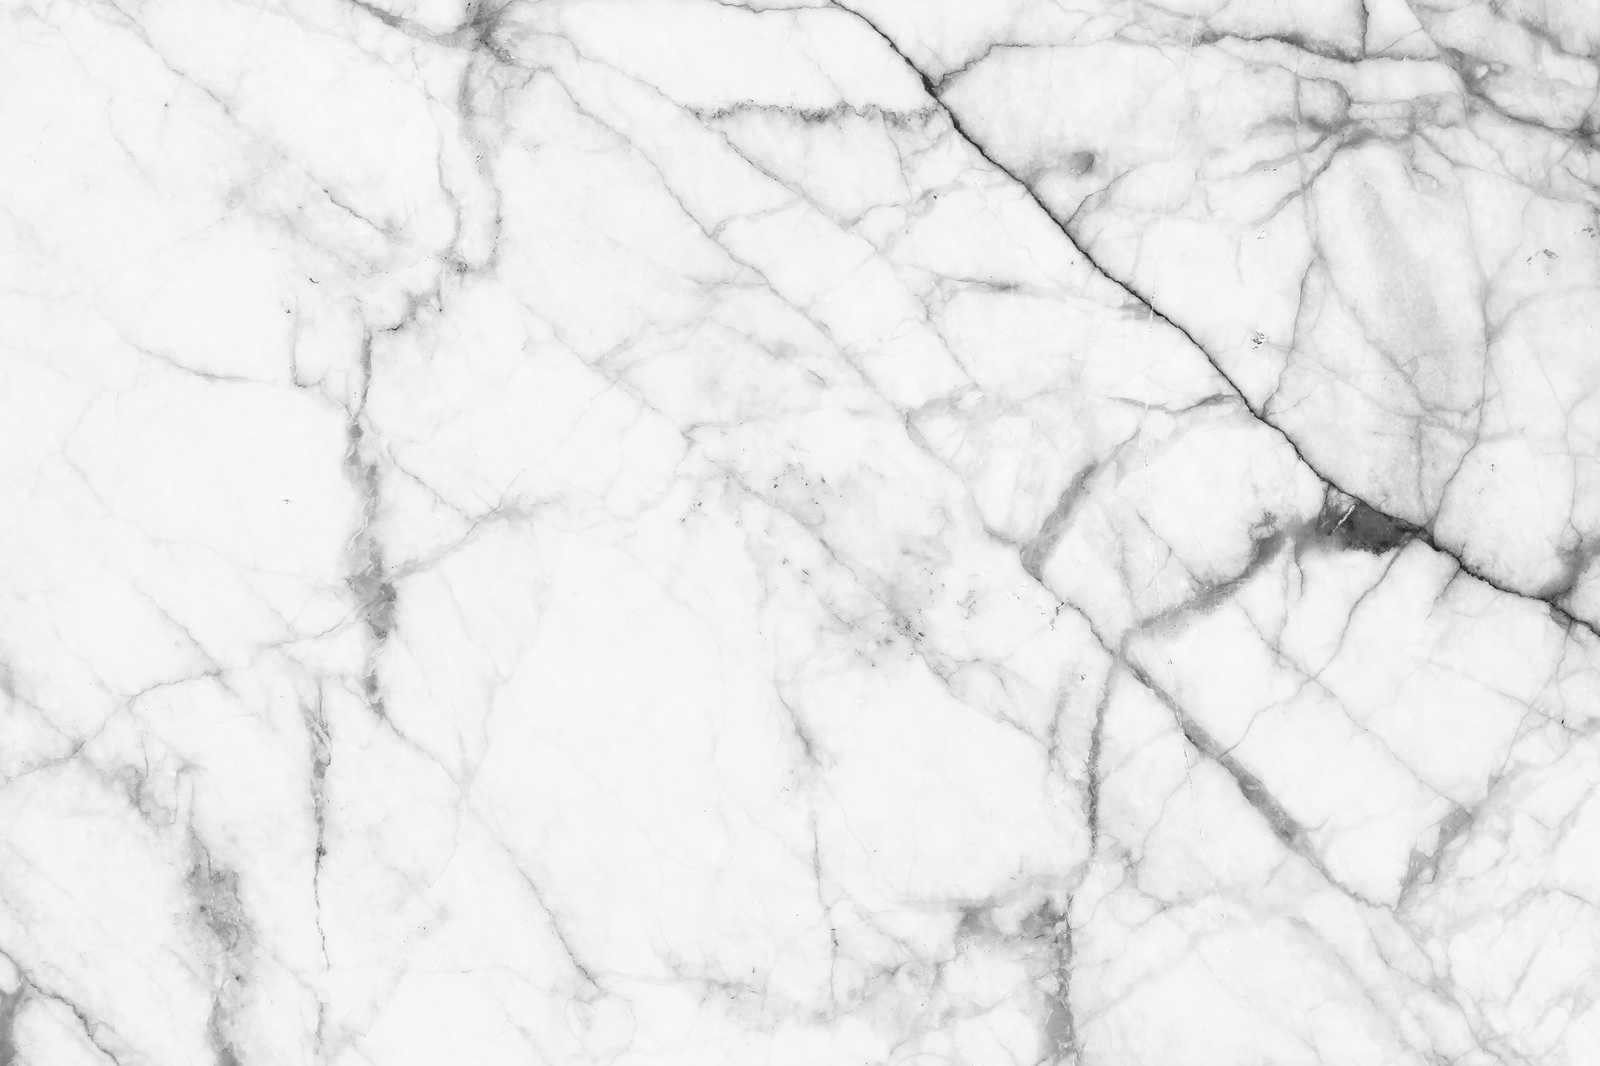             Schwarz-Weiß Leinwandbild Marmor mit natürlichen Details – 0,90 m x 0,60 m
        